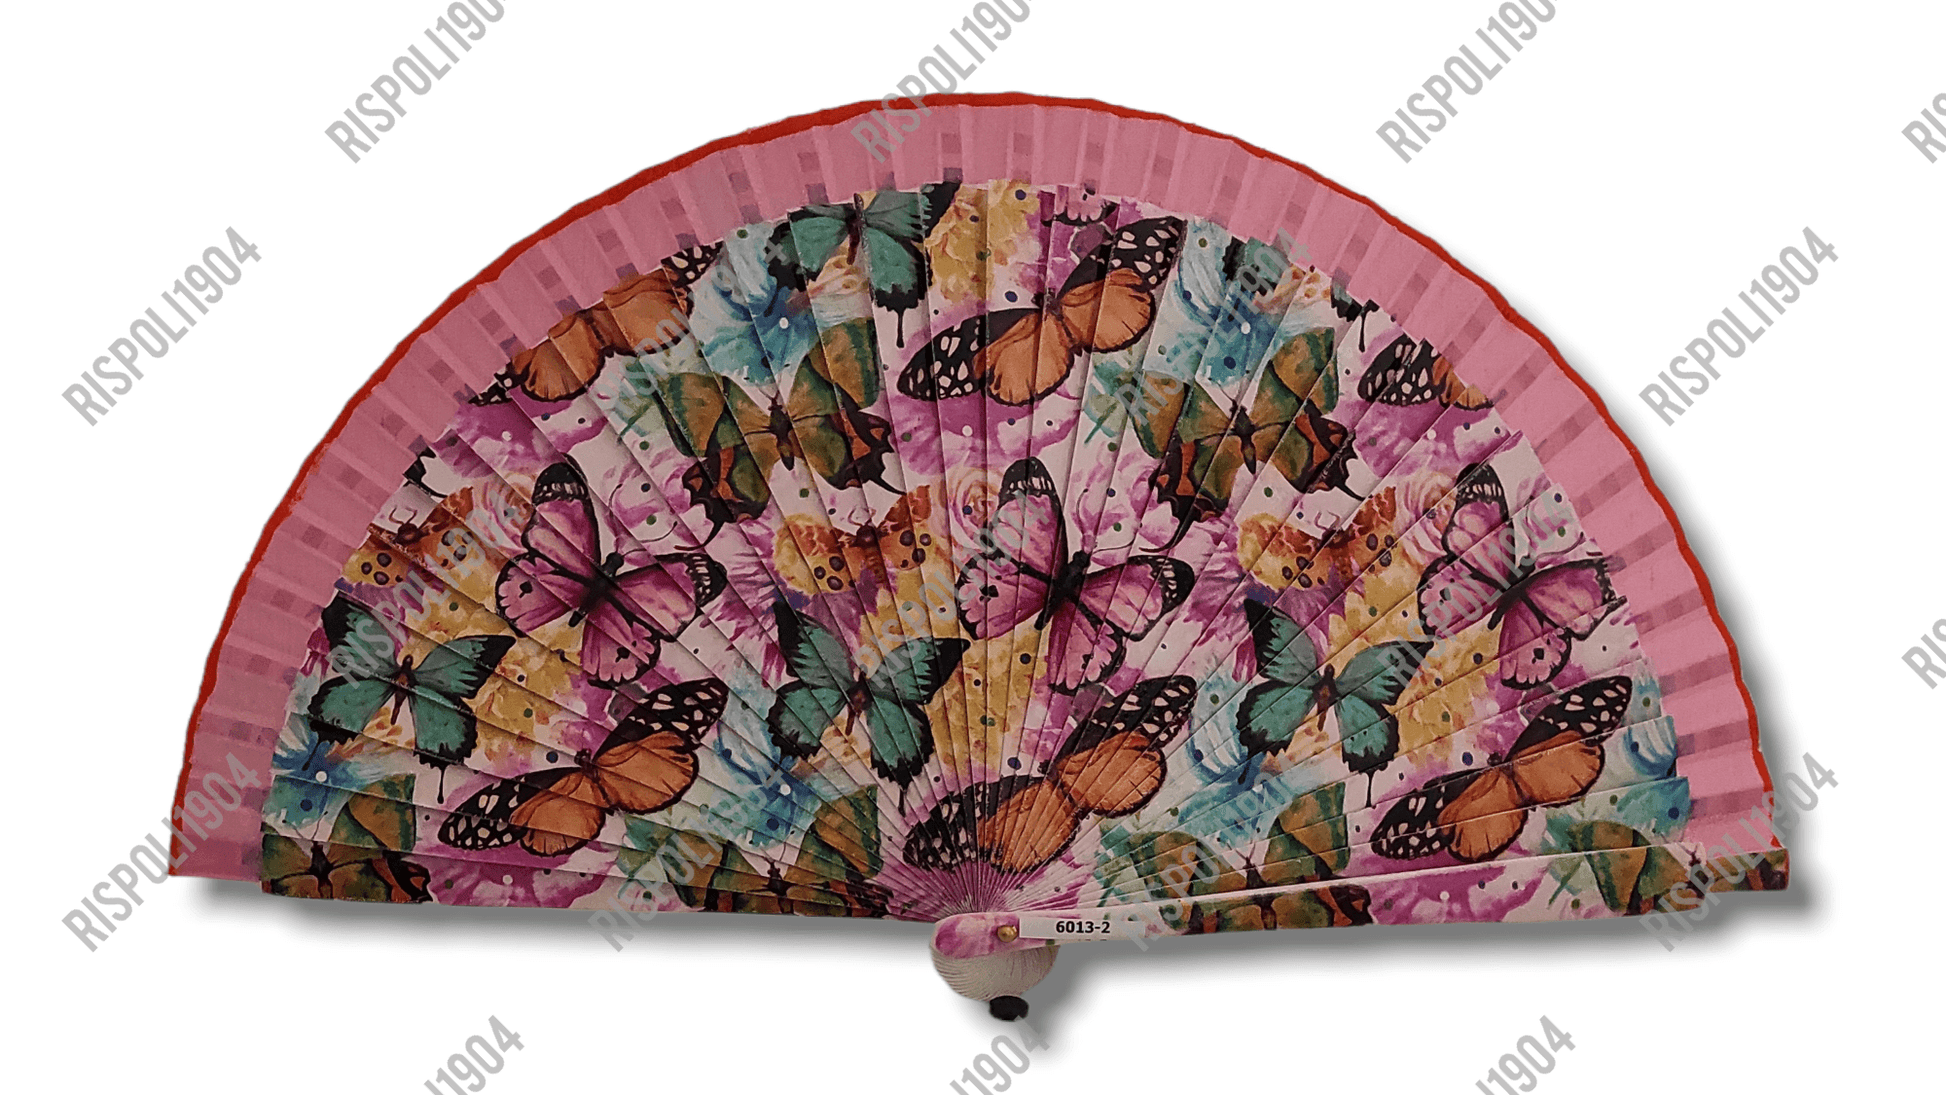 Ventaglio in legno con farfalle a stampa digitale. Apertura 42 cm. #6013-2 - Merceria Rispoli